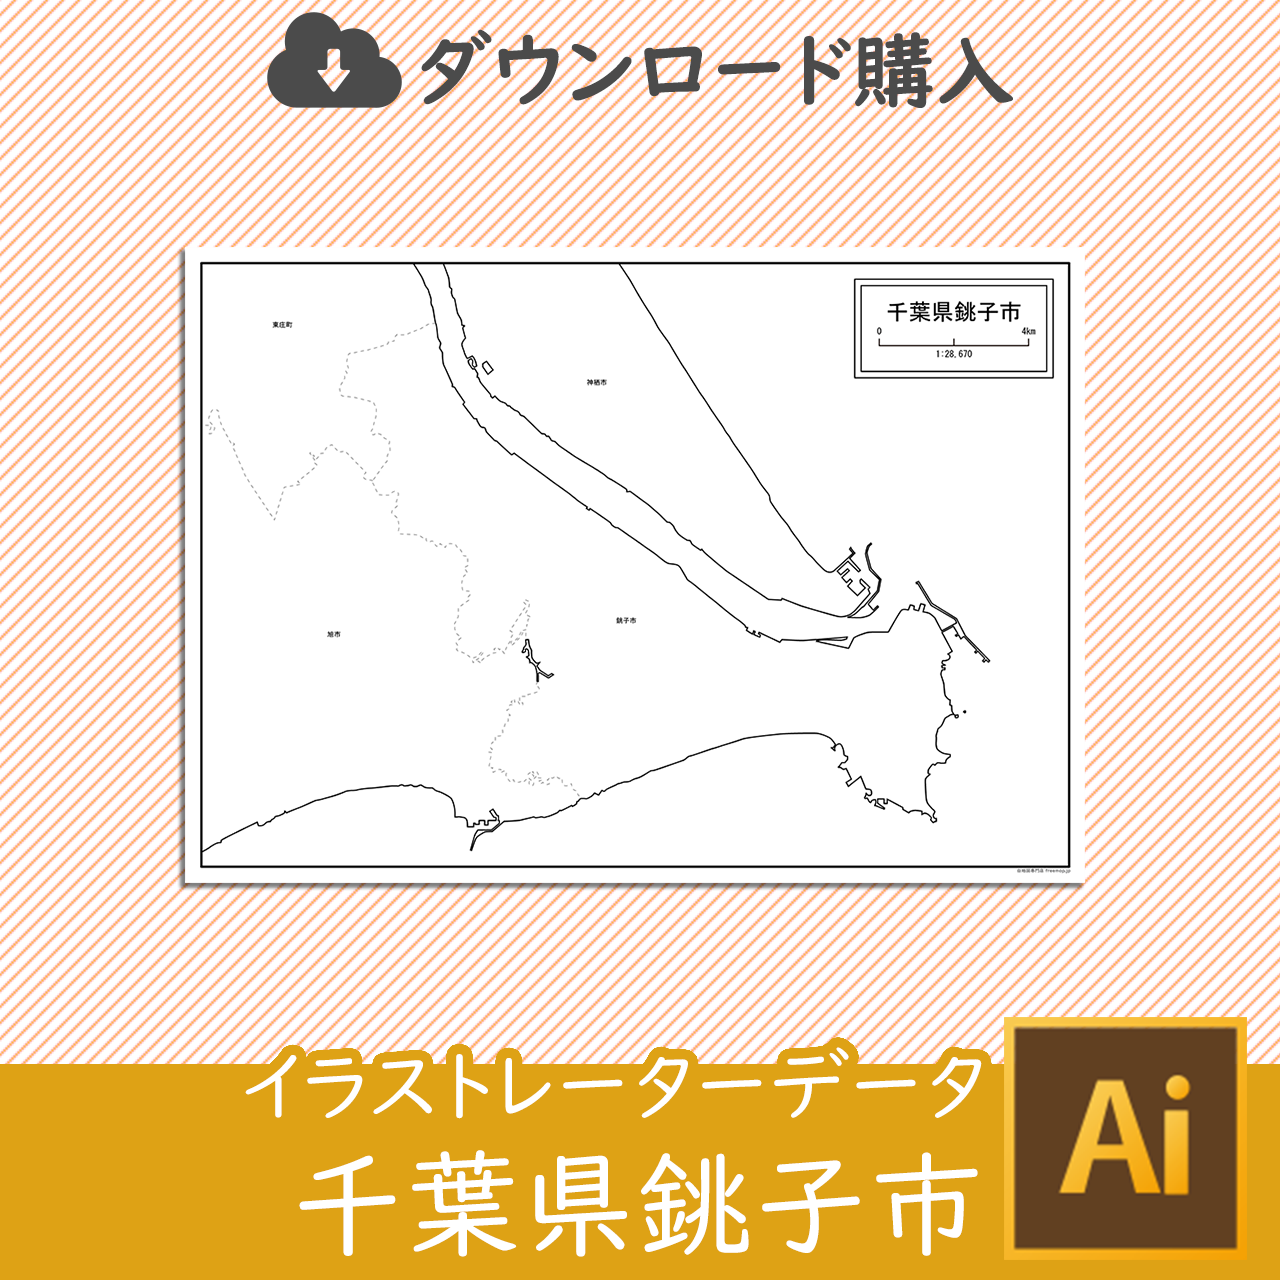 銚子市のaiデータのサムネイル画像